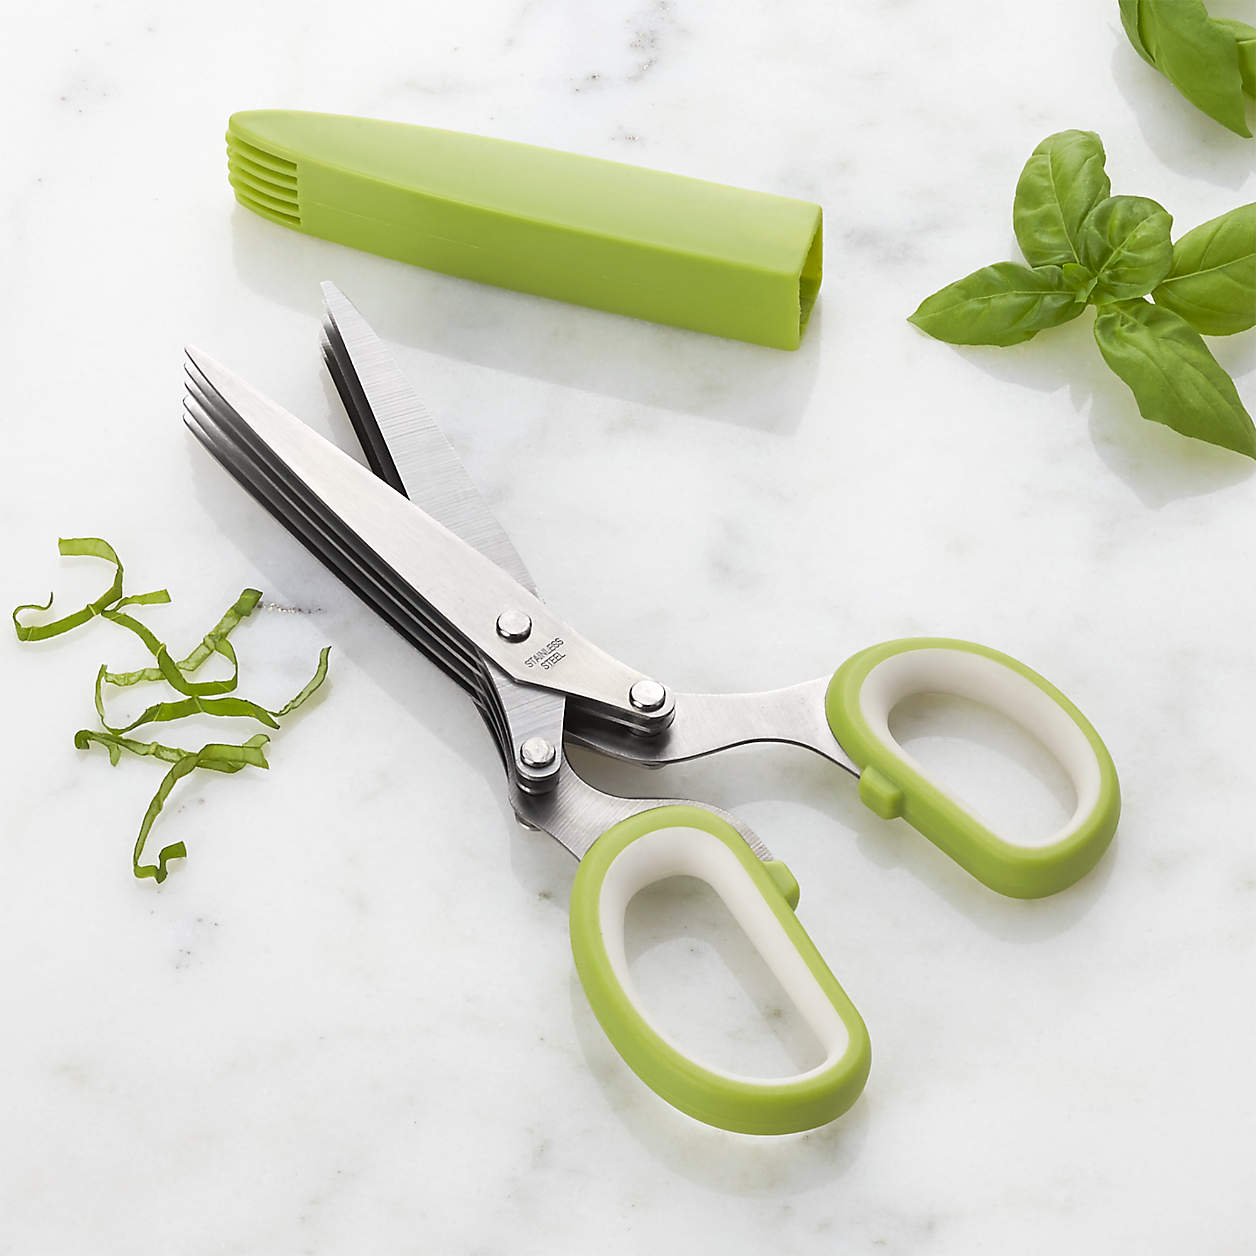 Buy Multi-Blade Herb Scissors Online